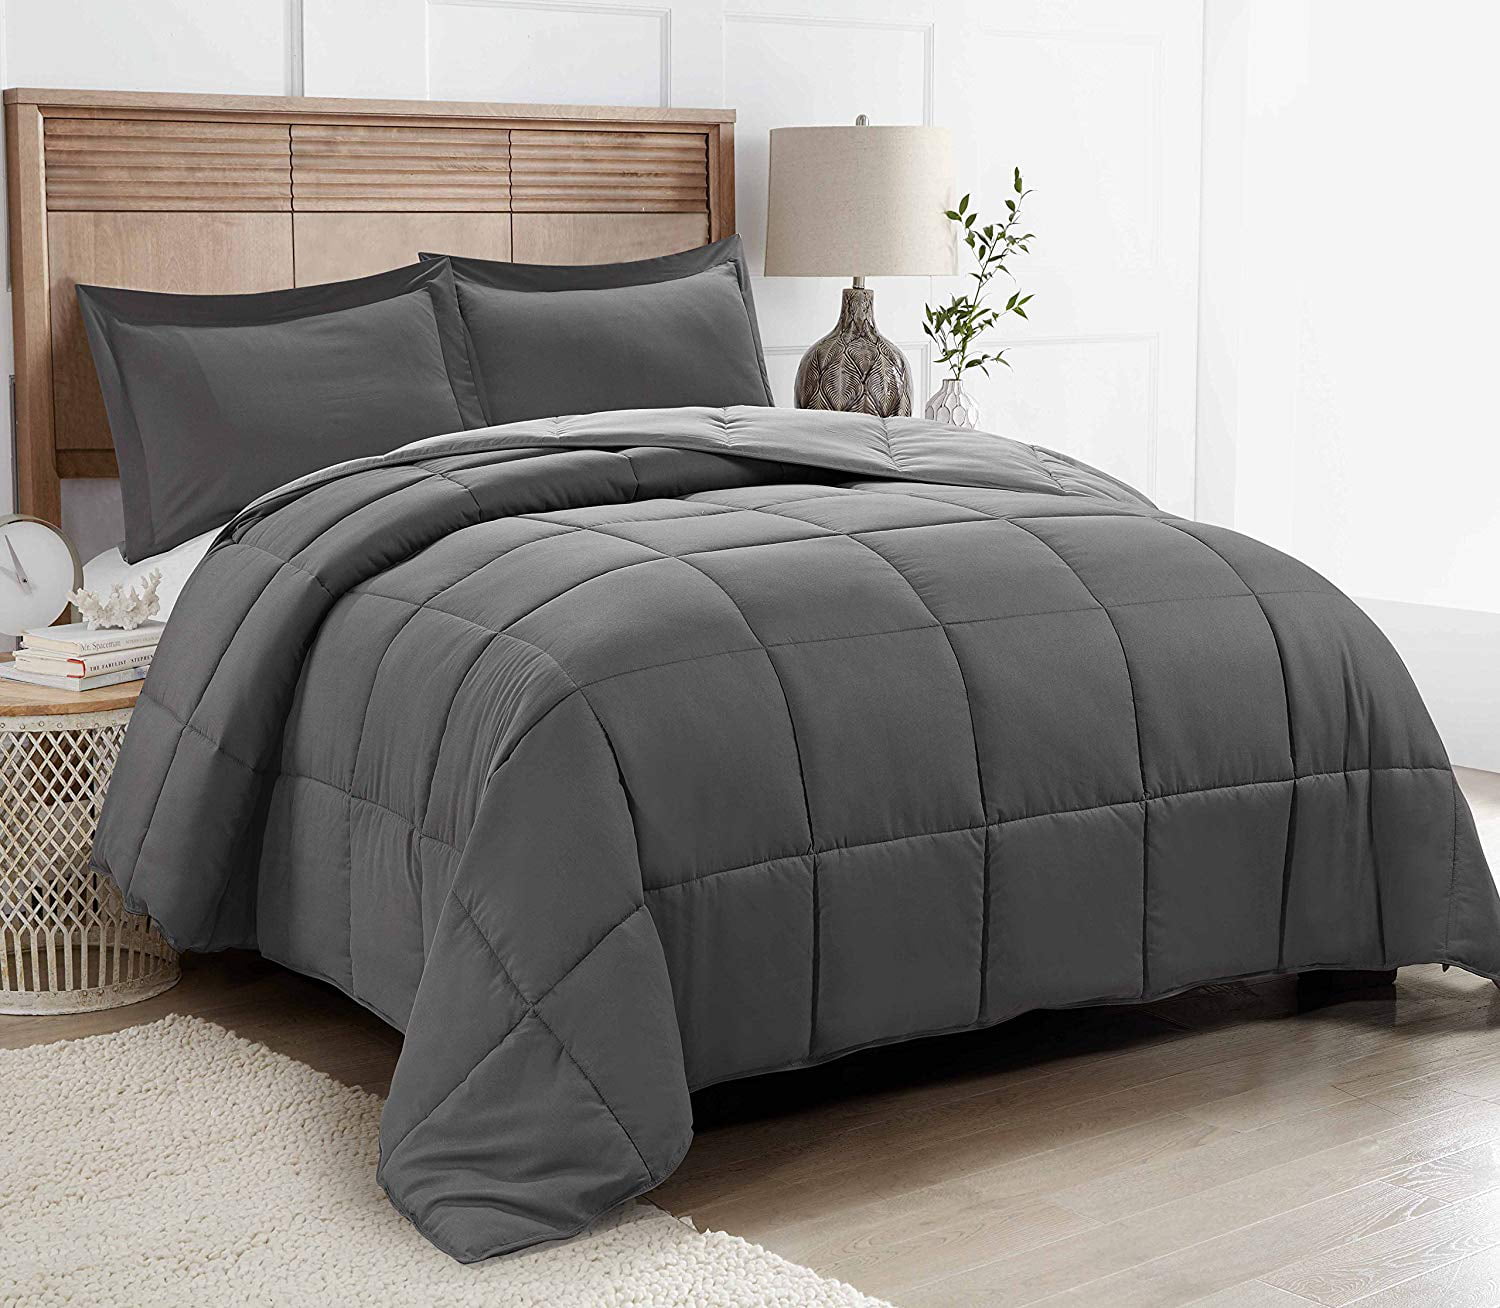 Gray Down Alternative Comforter All Season Duvet Insert